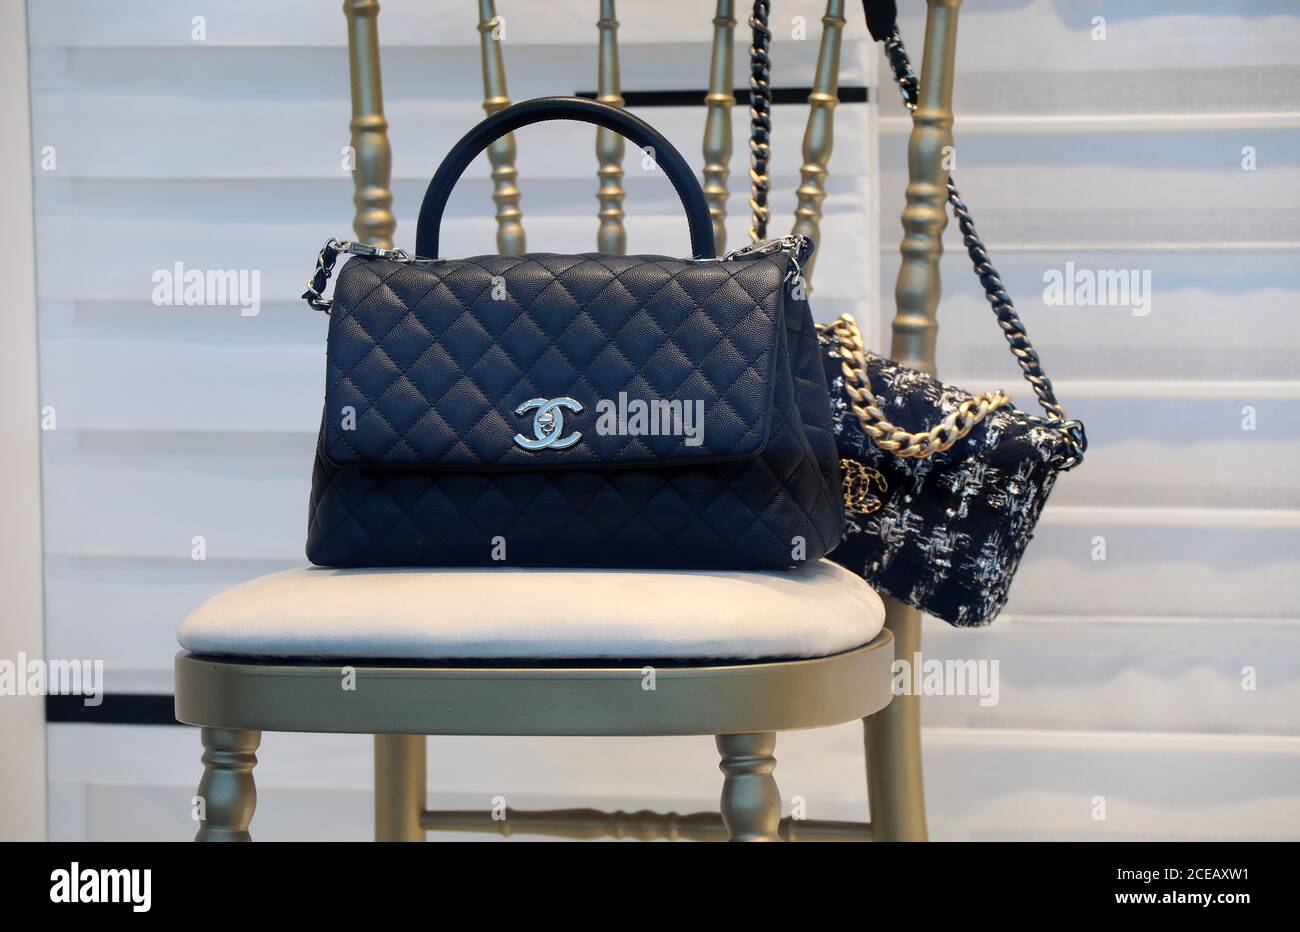 Sacs à main Chanel affichés dans une fenêtre de magasin Banque D'Images